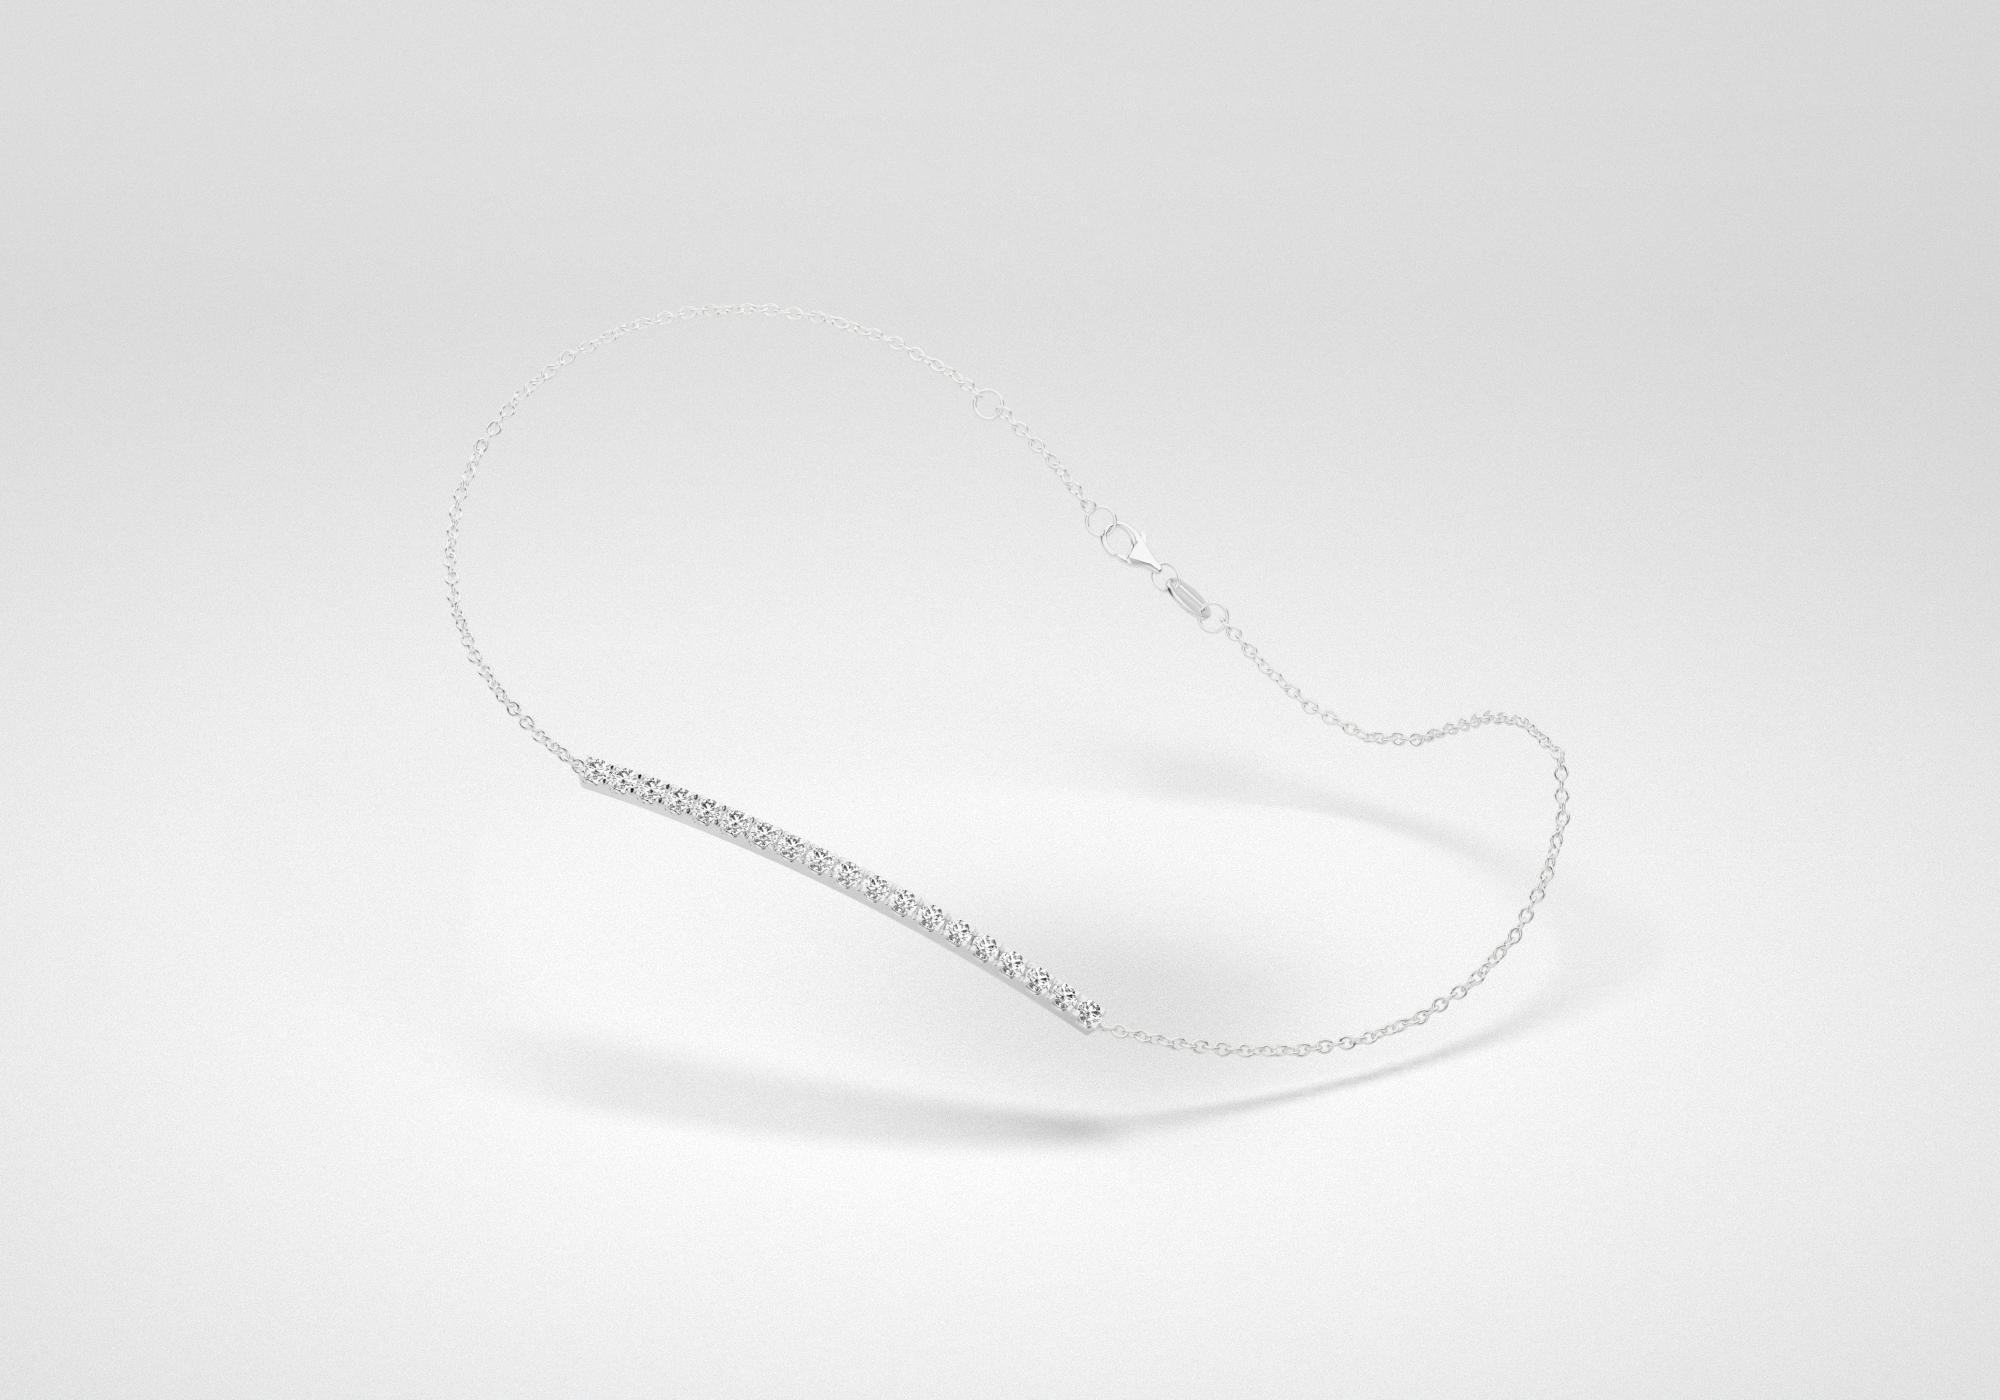 The Line Bracelet - Gray - White Gold 18 Kt